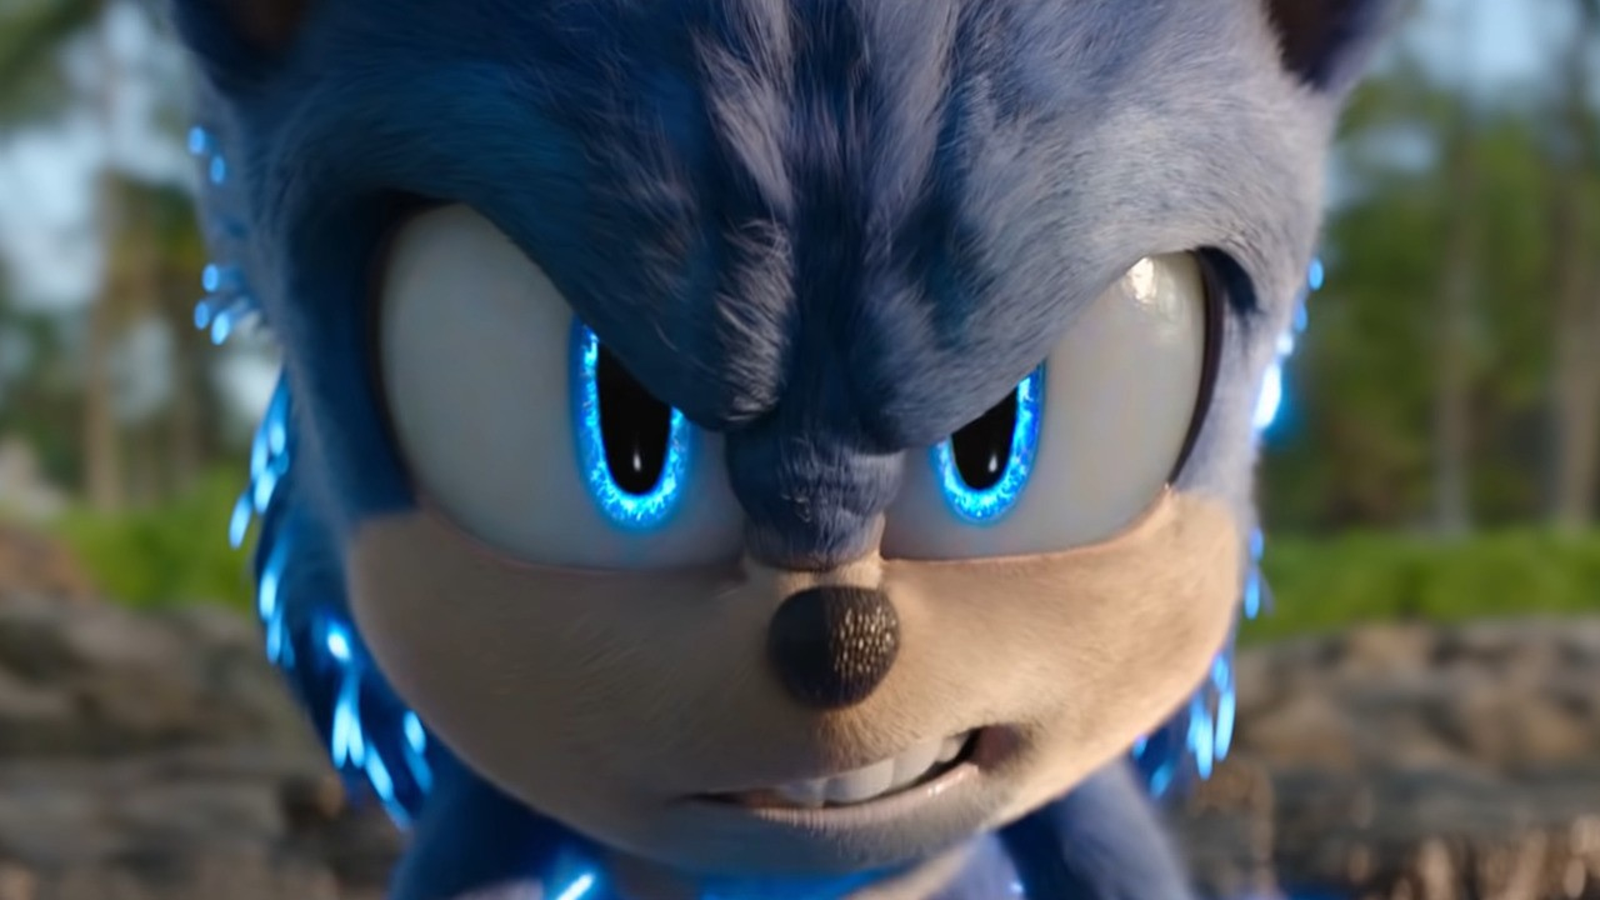 Sonic 3: Quando estreia o próximo filme do ouriço azul